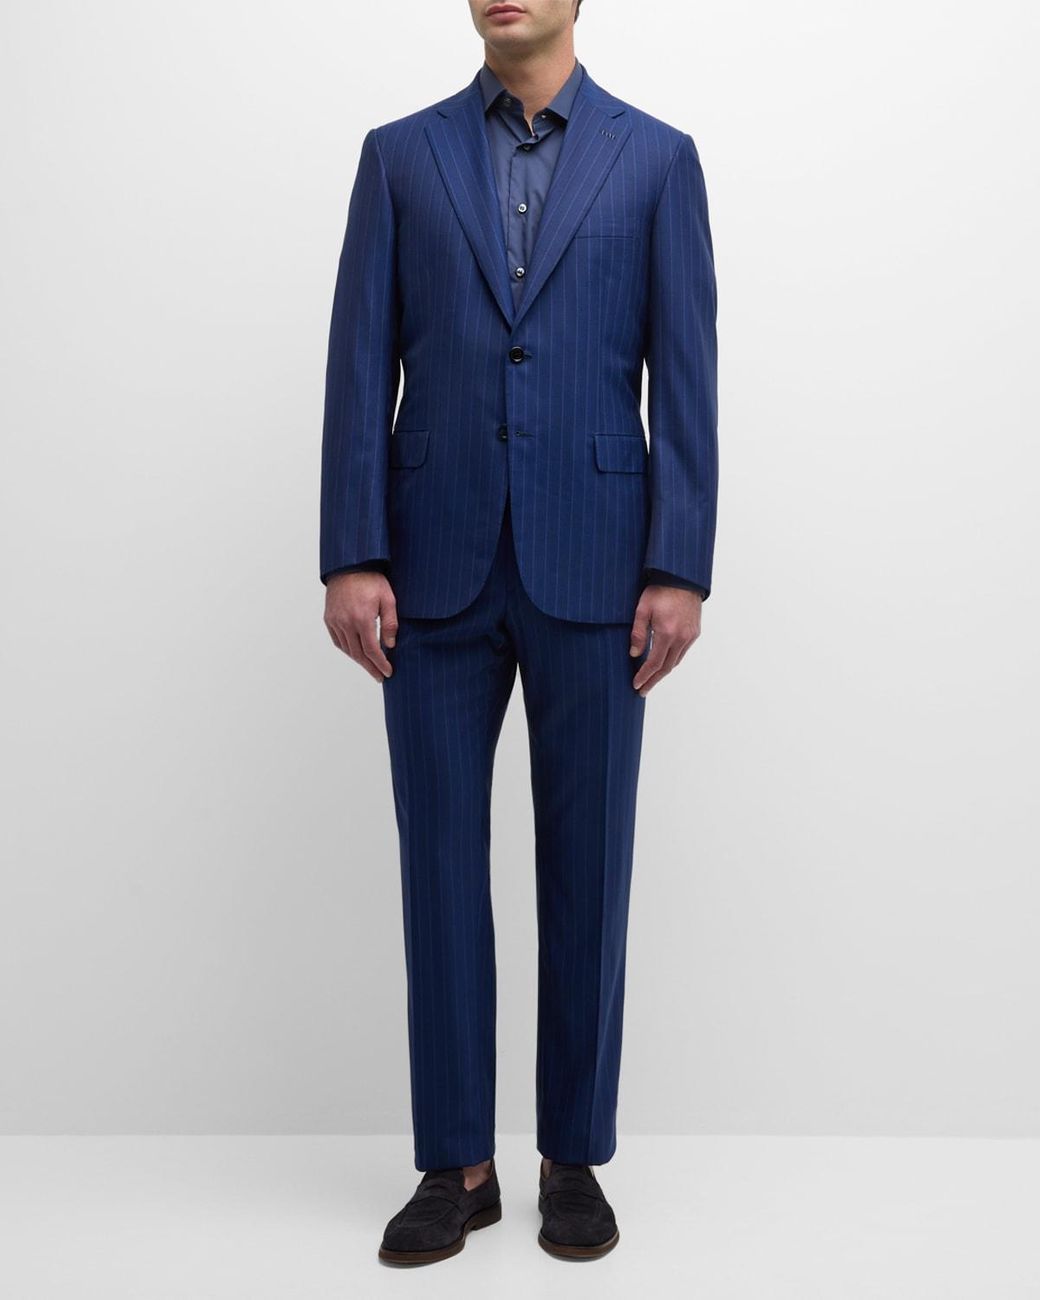 $7201 Brioni Men's Blue 2-Piece Plaid Wool Suit Coat Jacket Pants Size 56R  | eBay